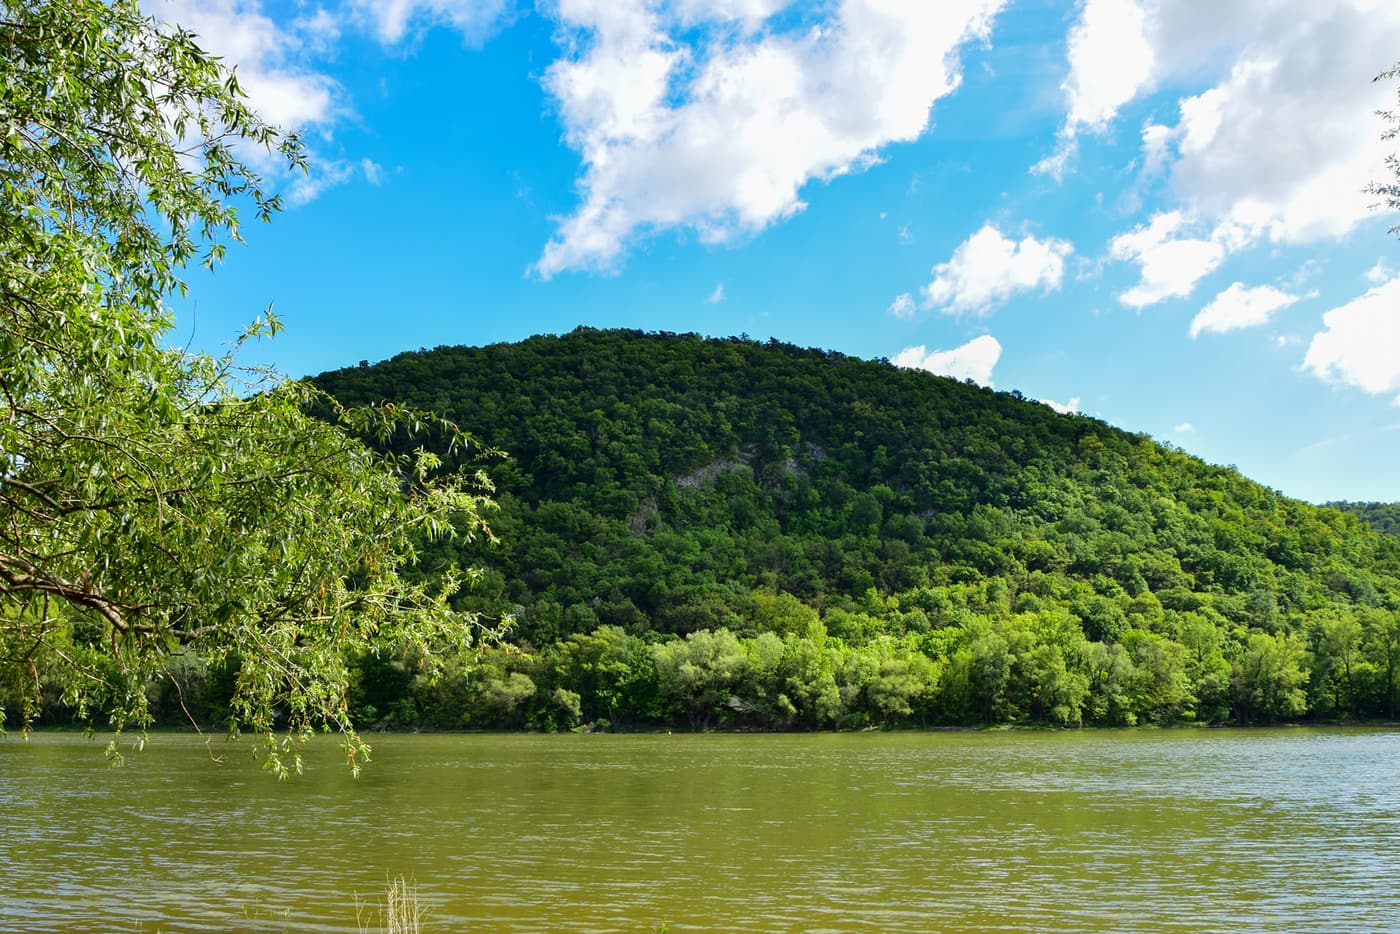 Die Inselspitze von Kisoroszi – Wandern und Entspannen in der Umarmung der Donau